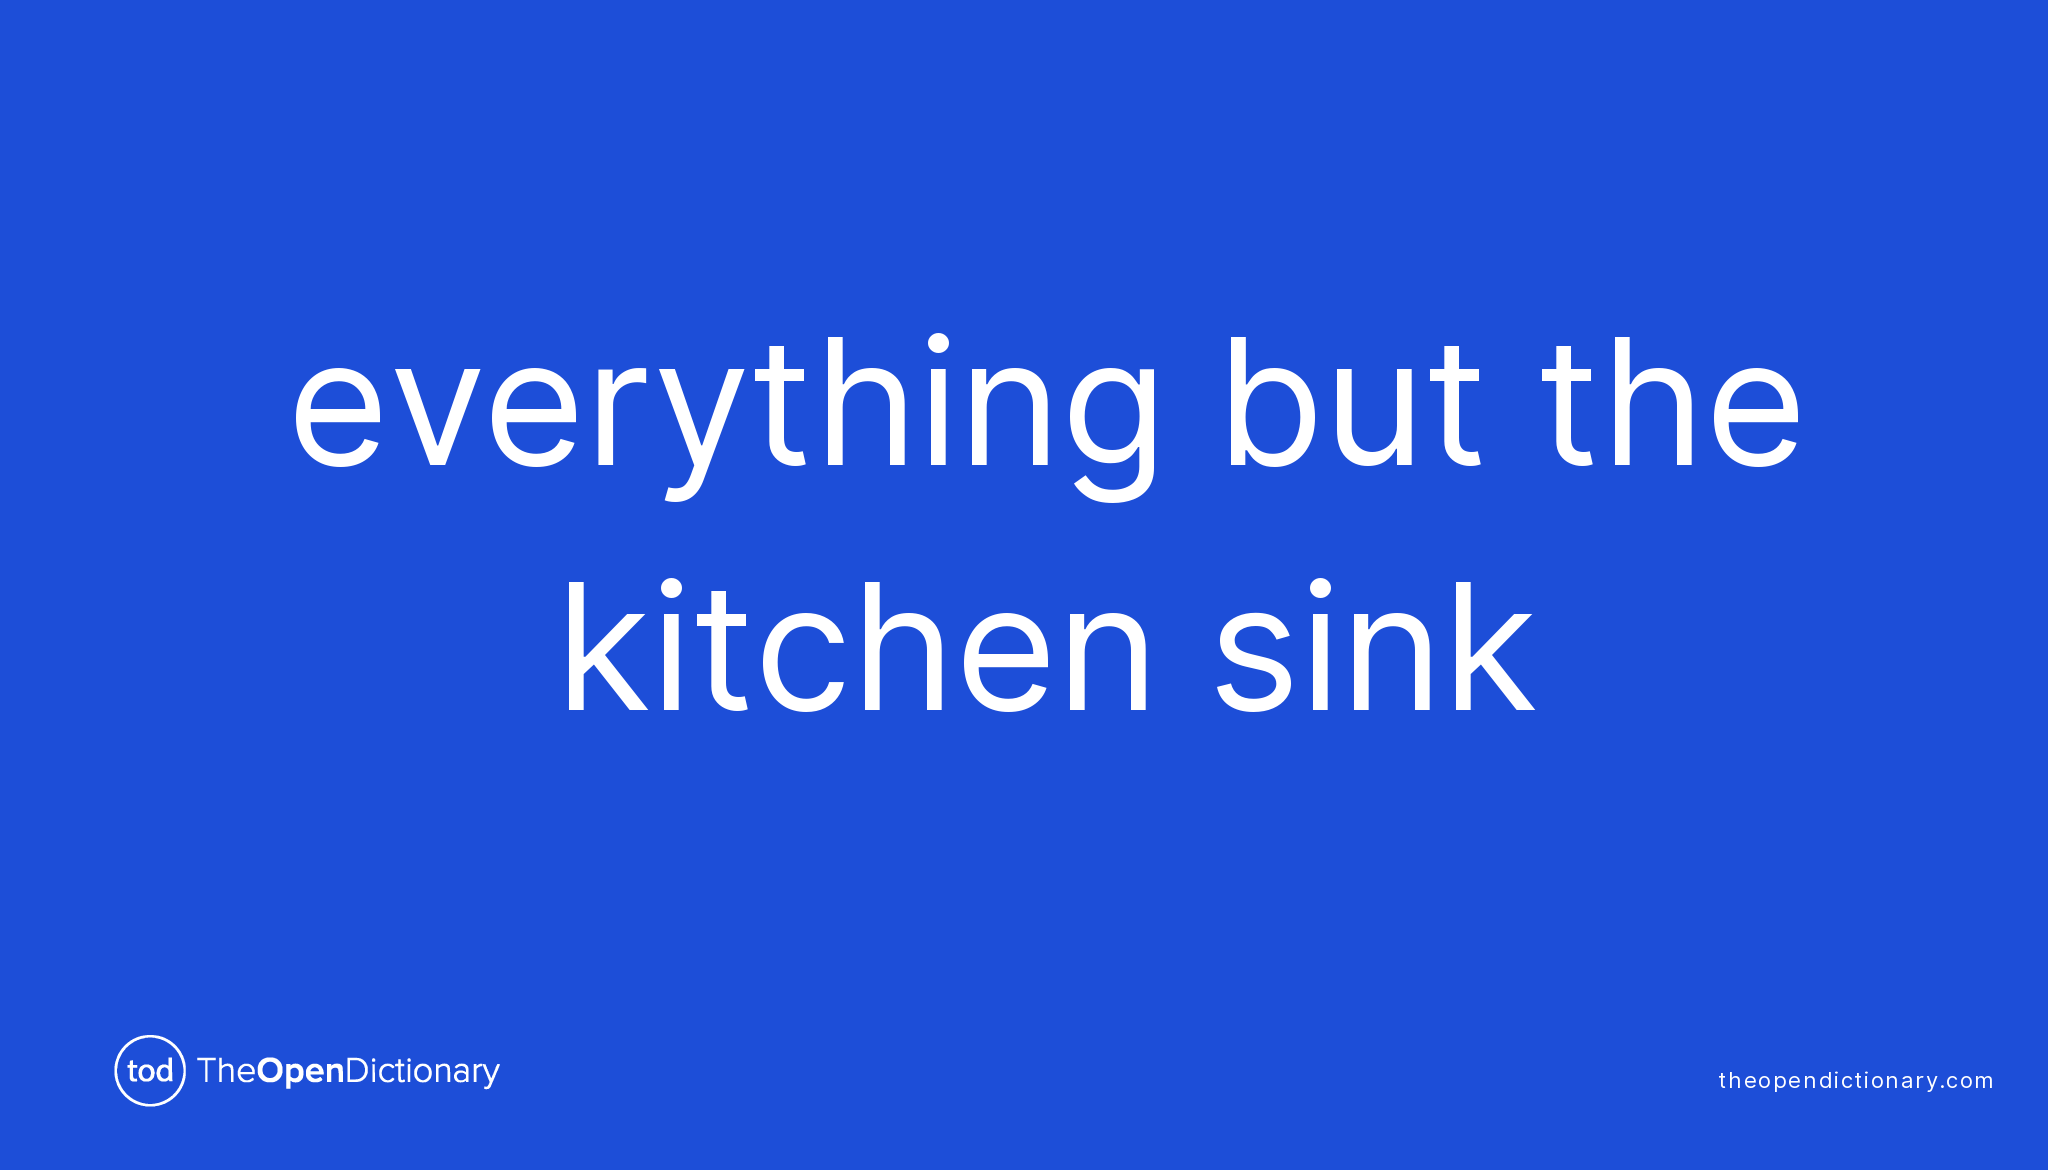 idiom with kitchen sink